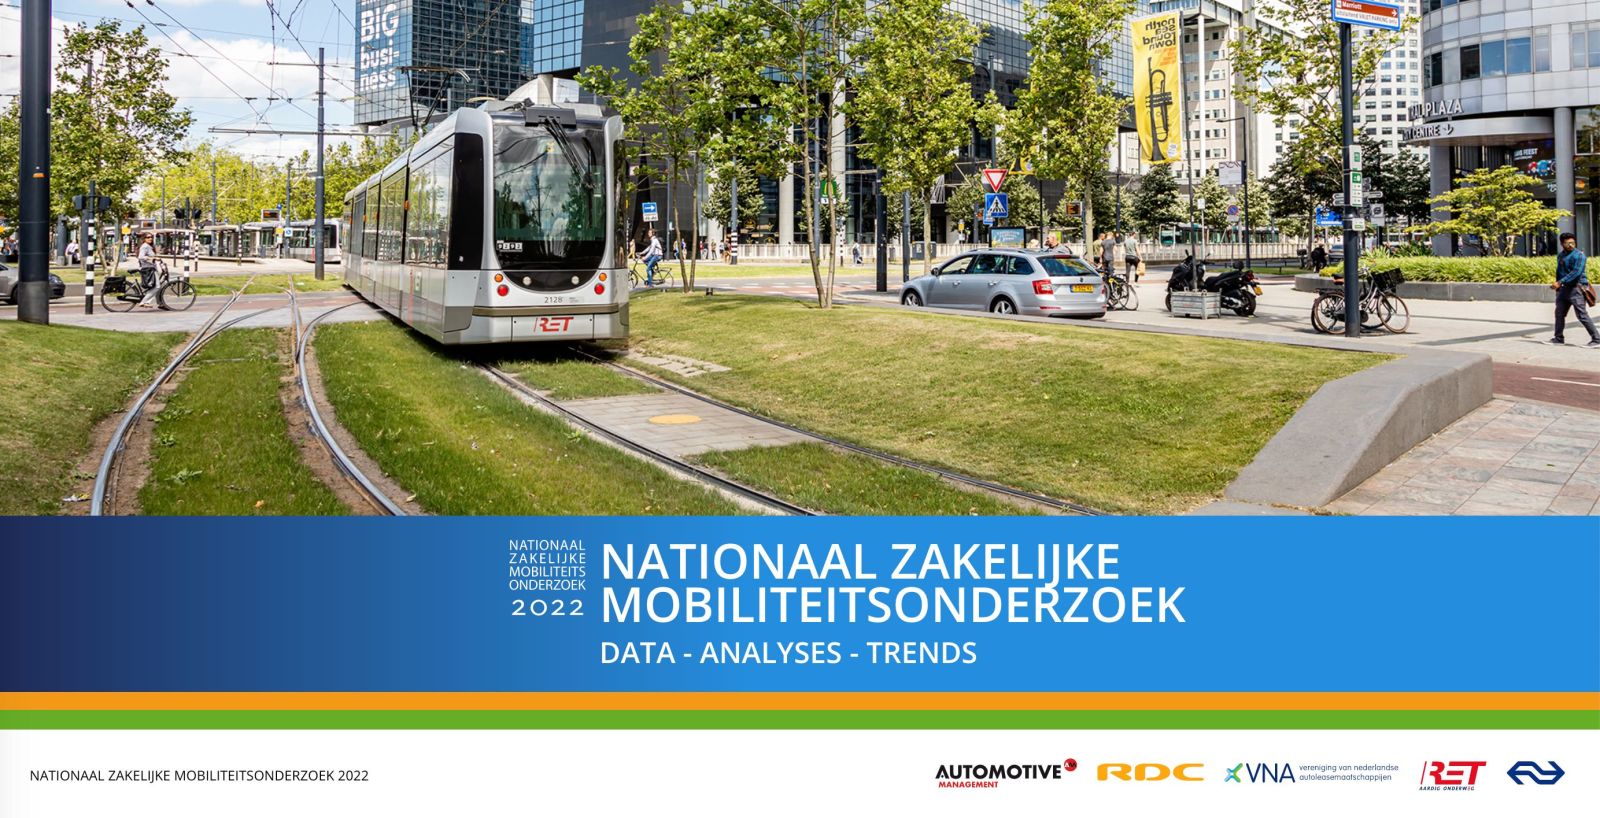 Nationaal Zakelijk Mobiliteitsonderzoek (National Business Mobility Survey) 2022